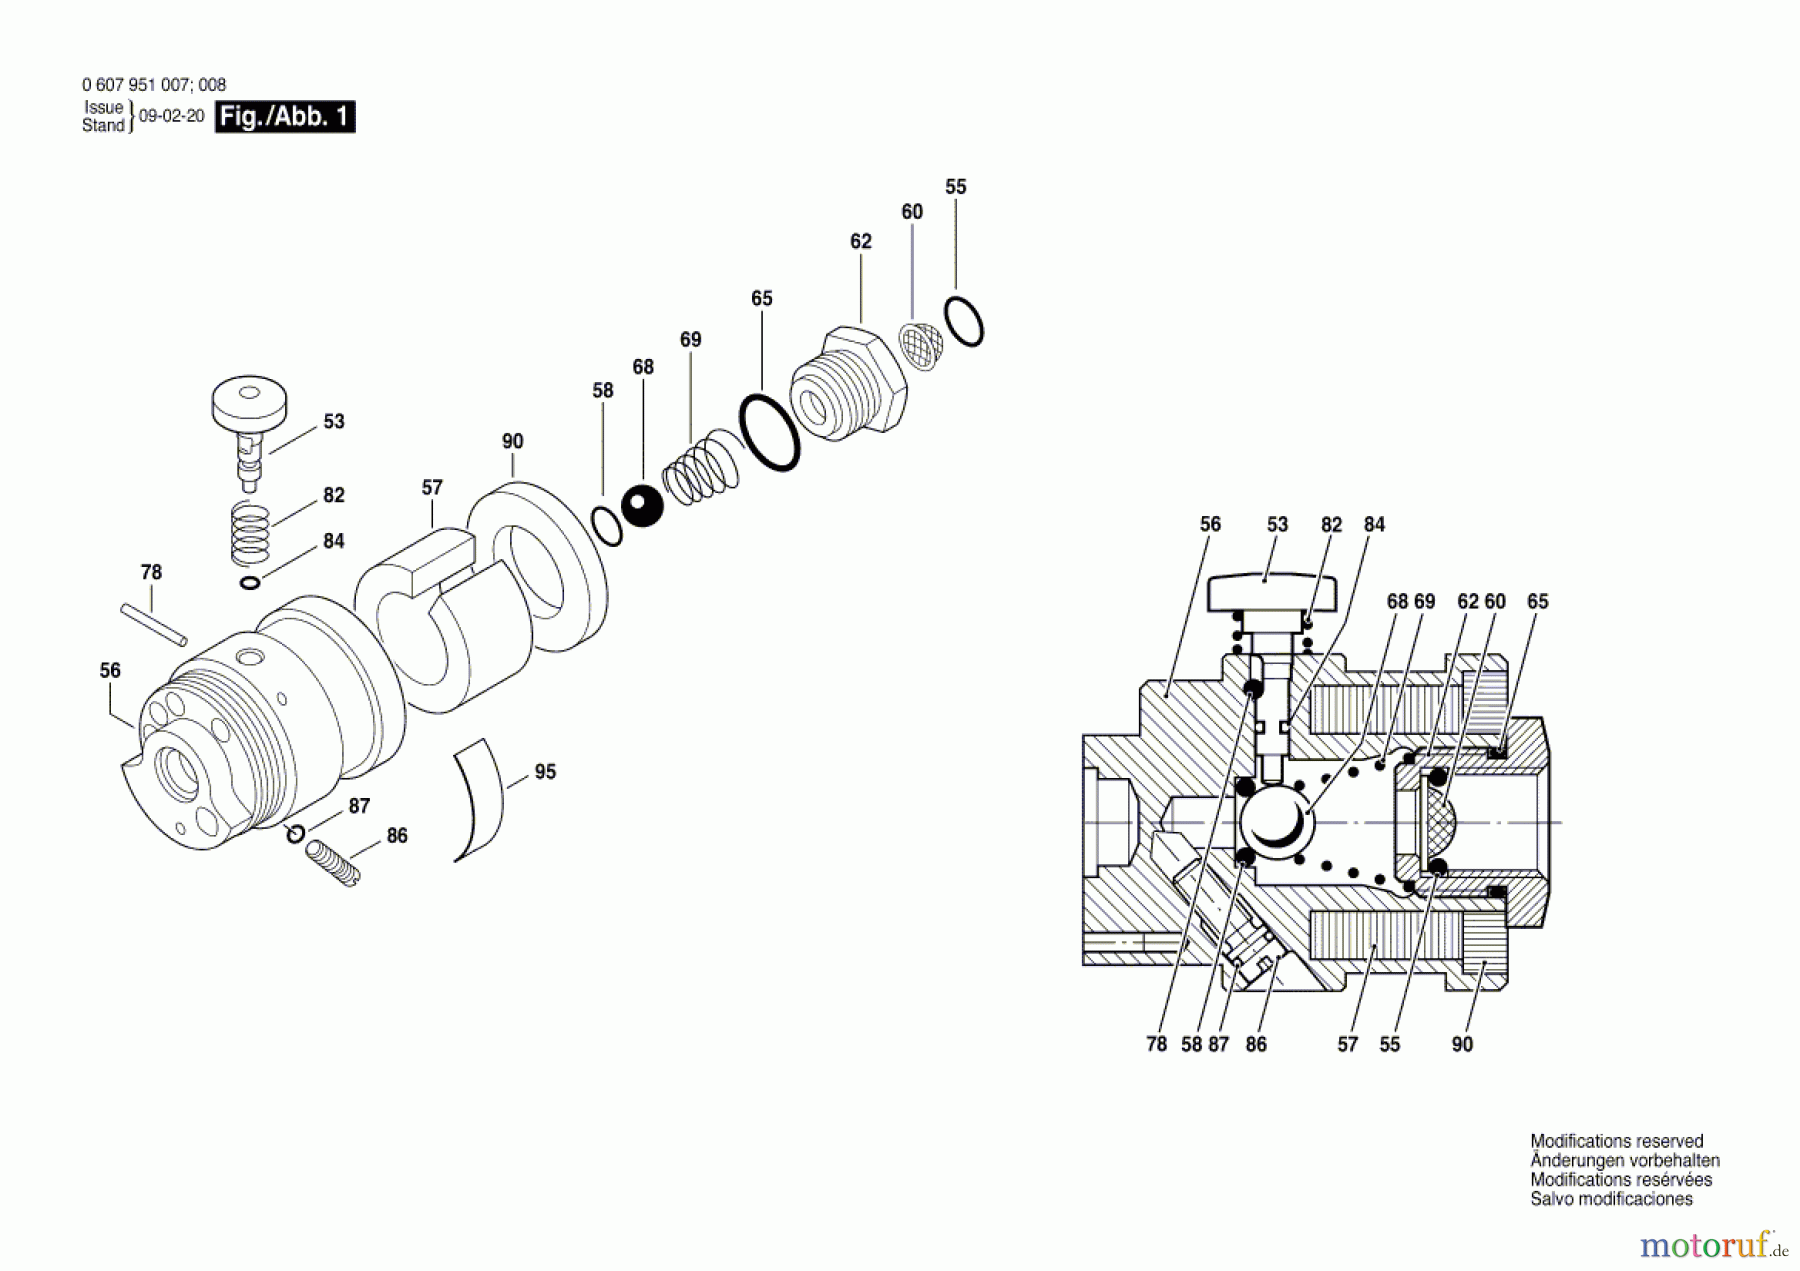  Bosch Werkzeug Ventilgehäuse ---- Seite 1